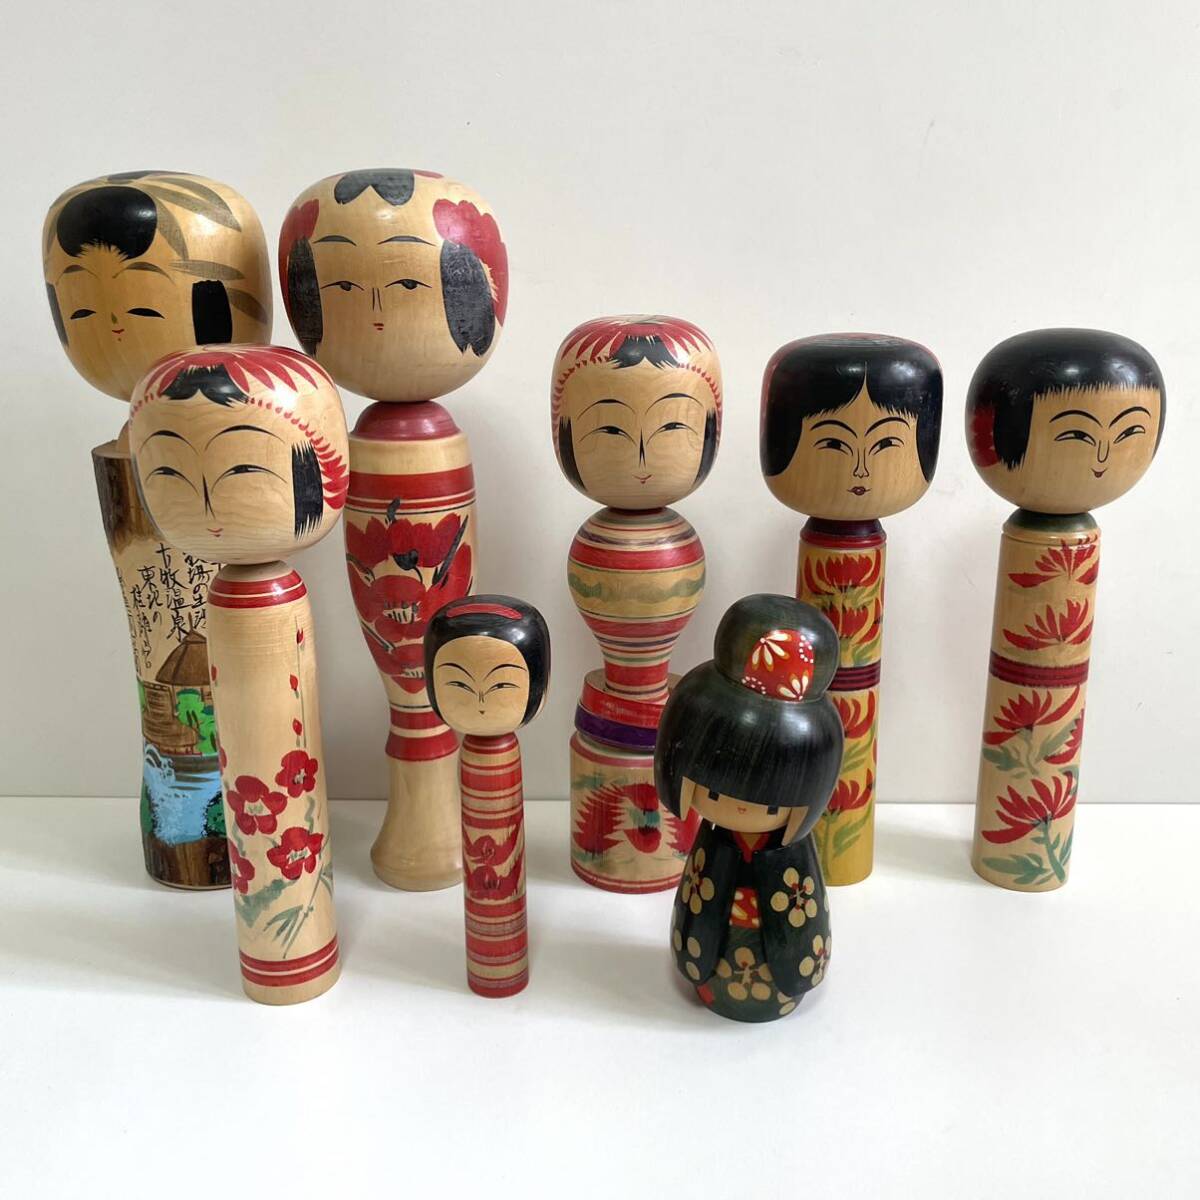 こけし 伝統工芸 民芸品 大量 まとめ セット 二代目吉弥 とみを 色 日 日本 置物 人形の画像1